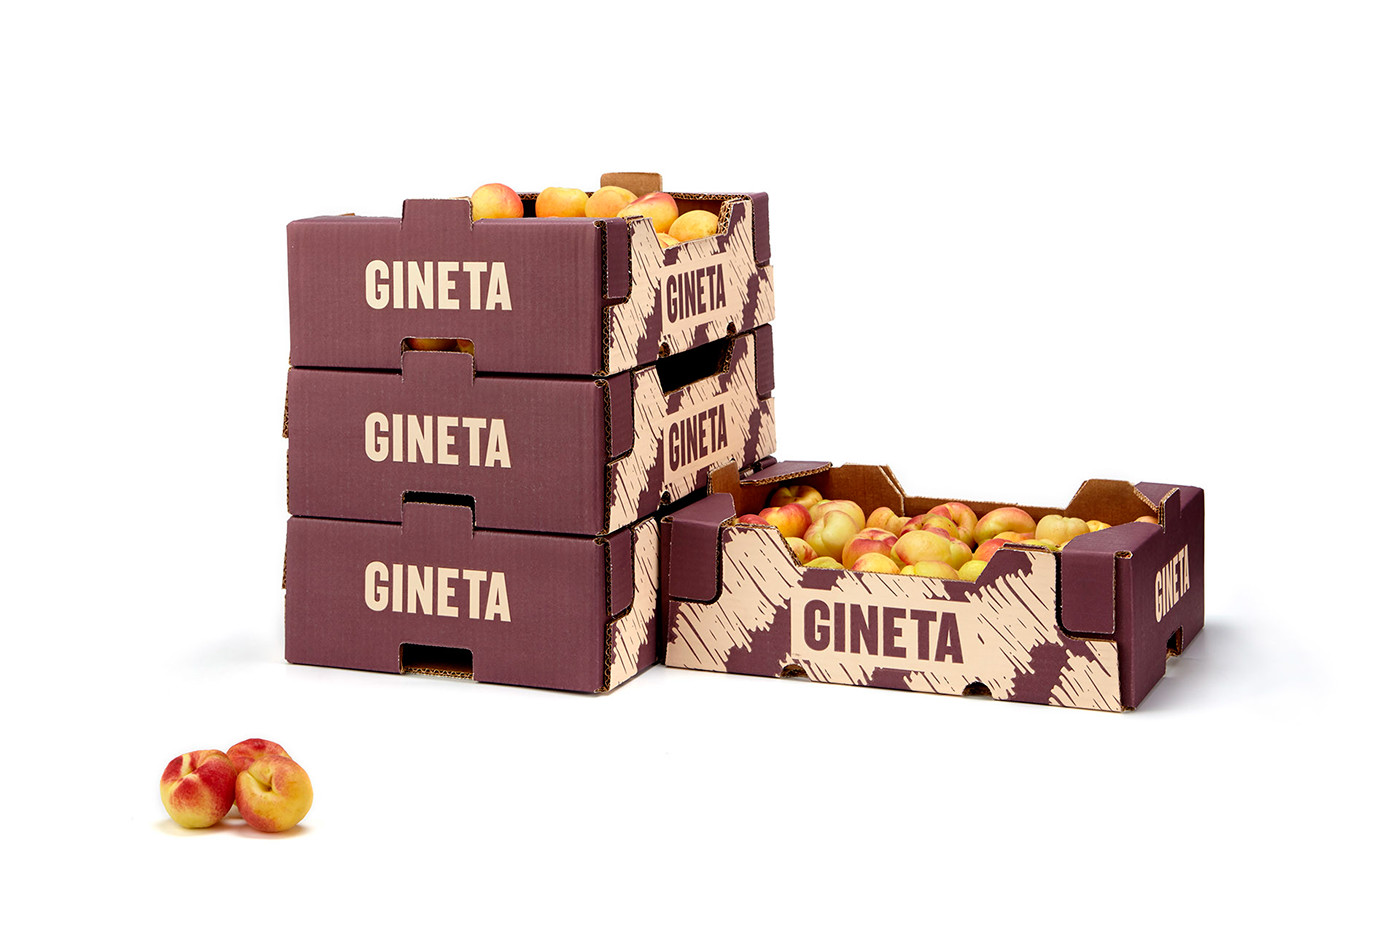 packaging fruis packaging cardboard cardboard box fruits apricot fruit branding Pear